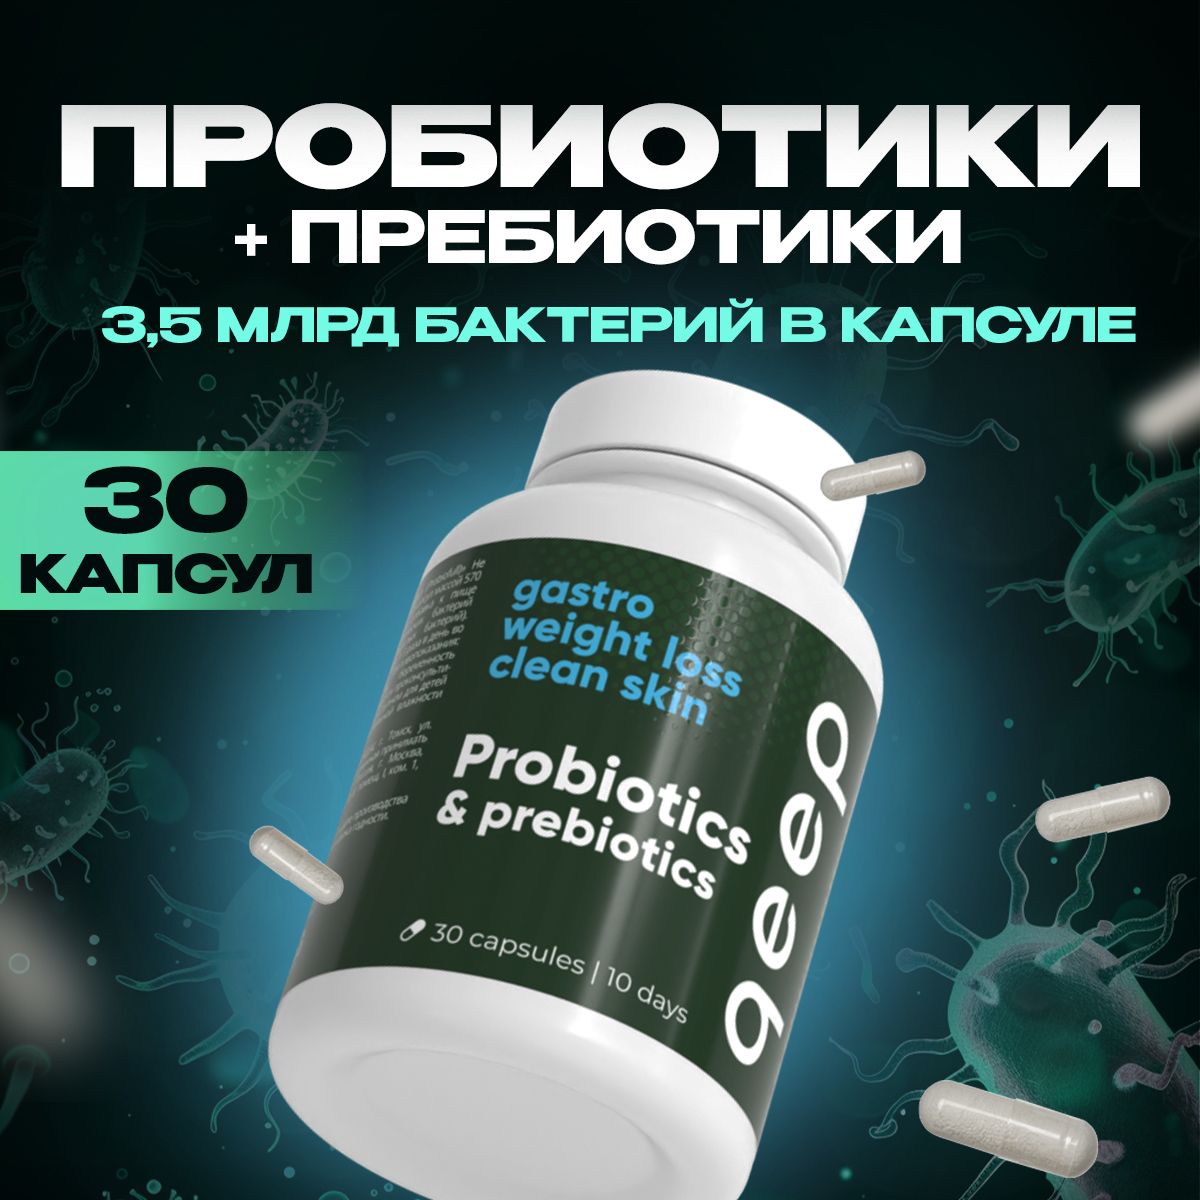 ПробиотикипребиотикдлямикрофлорыкишечникаПробиофул